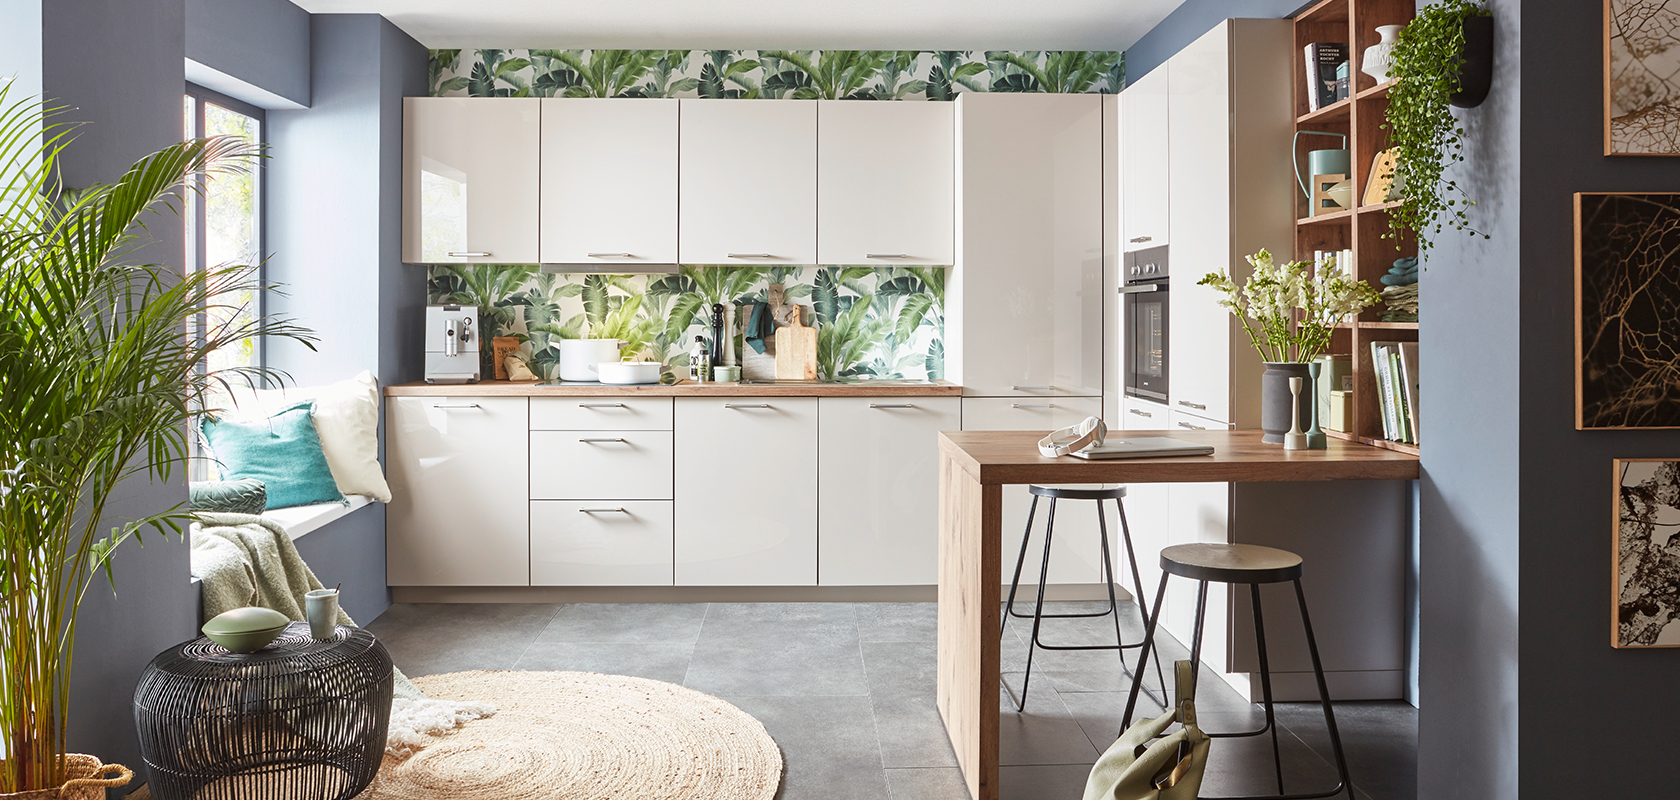 Intérieur de cuisine moderne avec des armoires blanches, un papier peint tropical, un comptoir en bois, des tabourets de bar élégants et des accents de plantes vertes créant un espace confortable et contemporain.